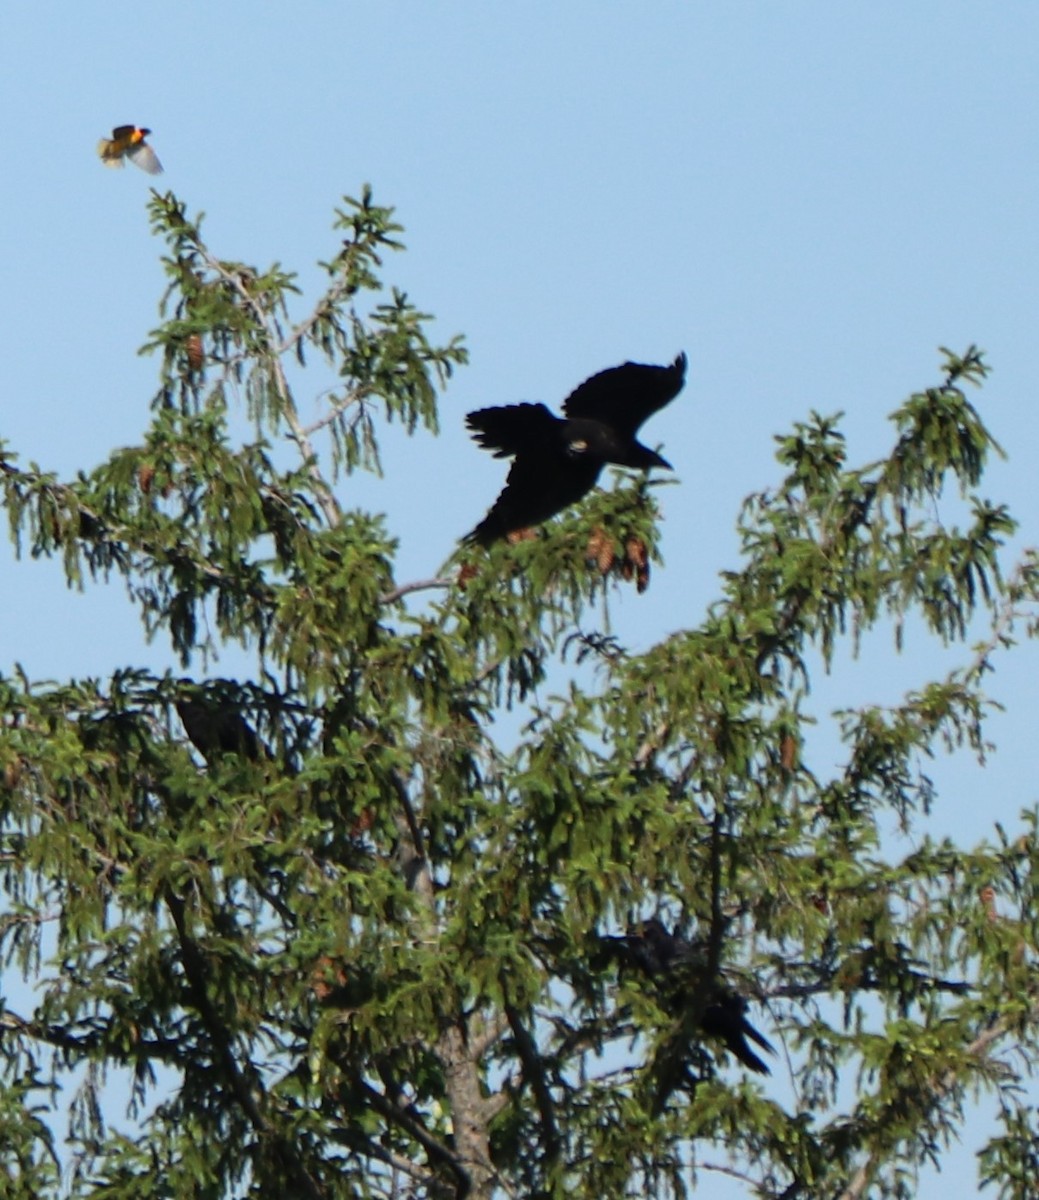 Common Raven - valerie heemstra